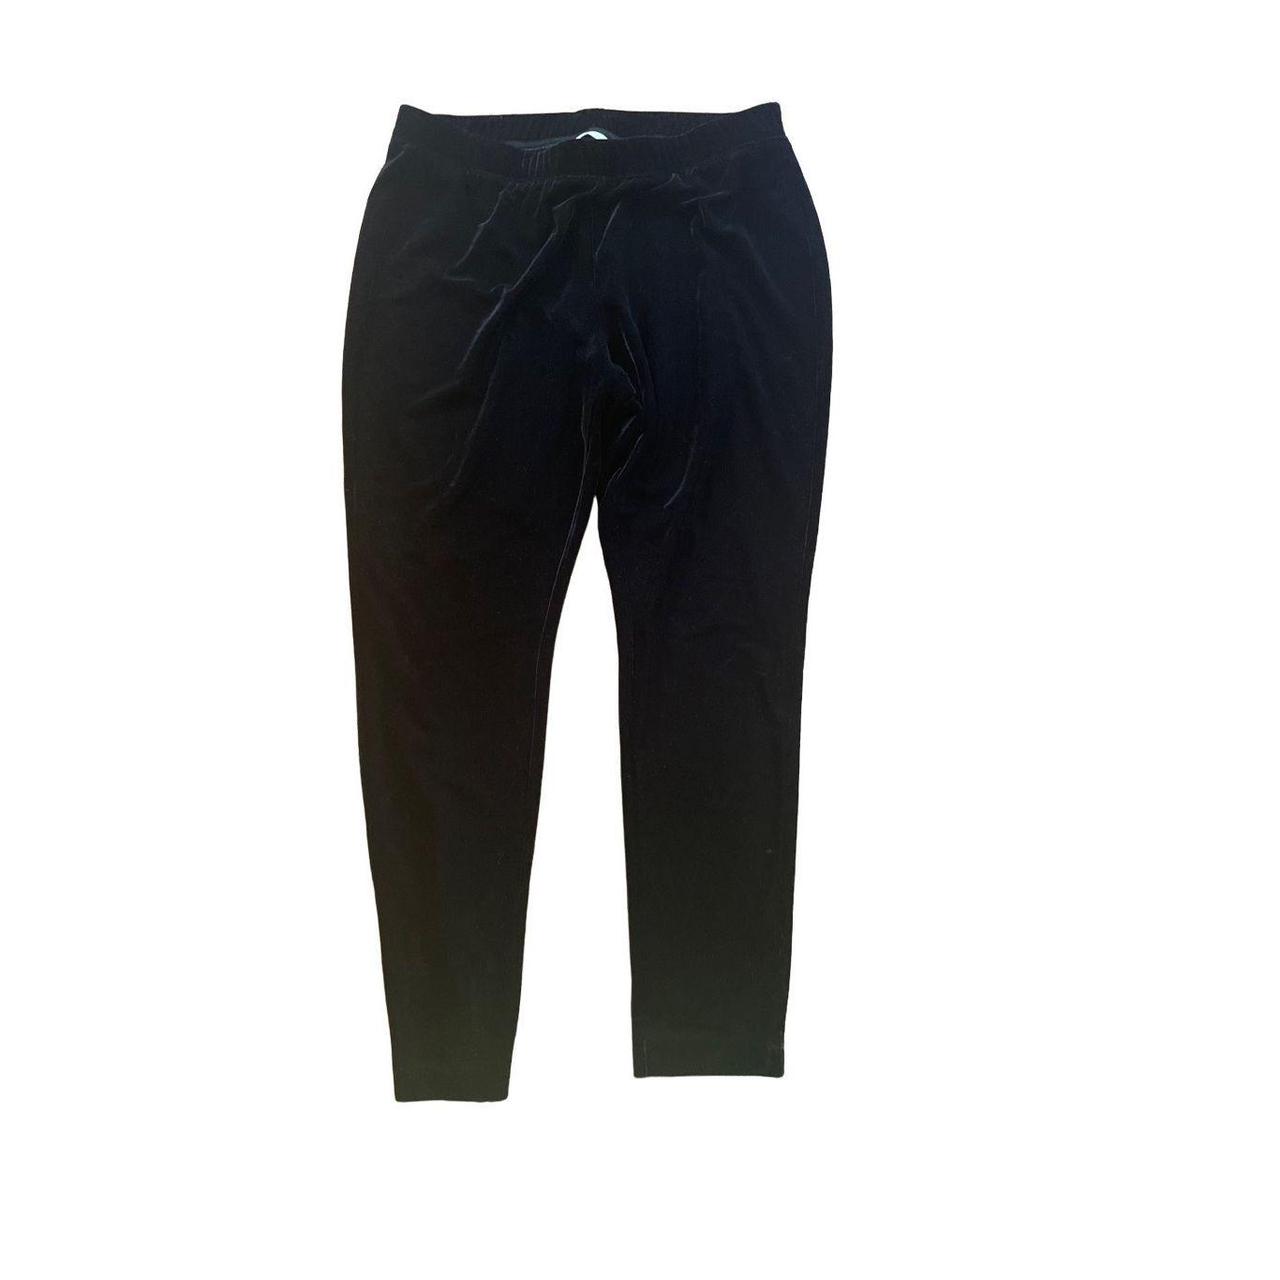 Soft Surroundings black velvet pull on women's pants - Depop